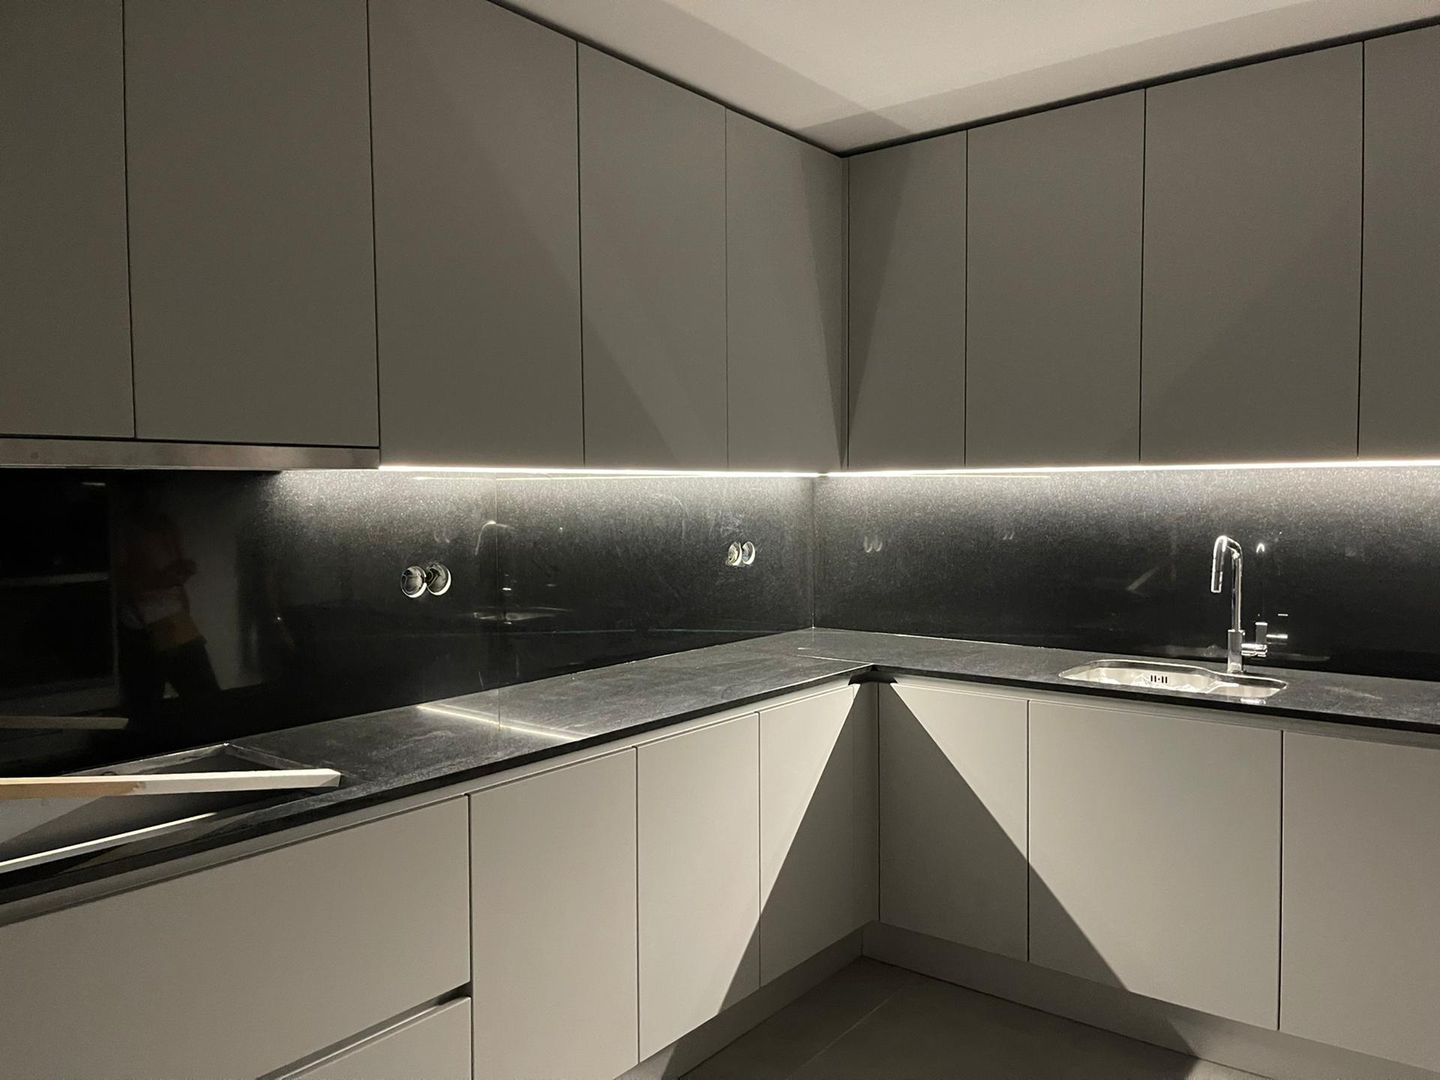 Cozinha em tons de cinza e preto ADN Furniture Armários de cozinha